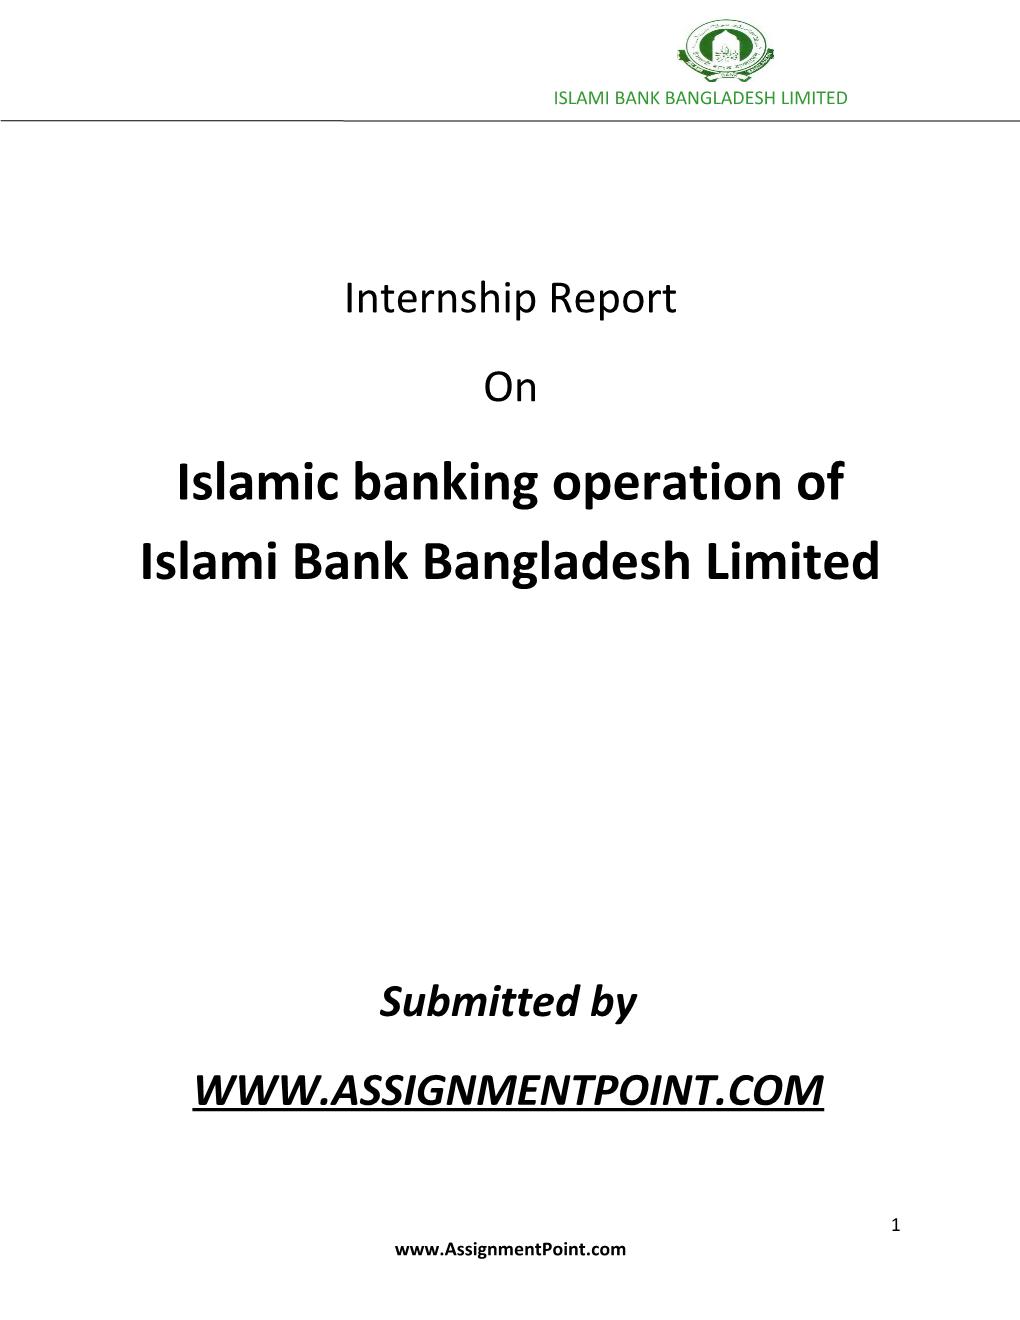 Islamic Banking Operation of Islami Bank Bangladesh Limited